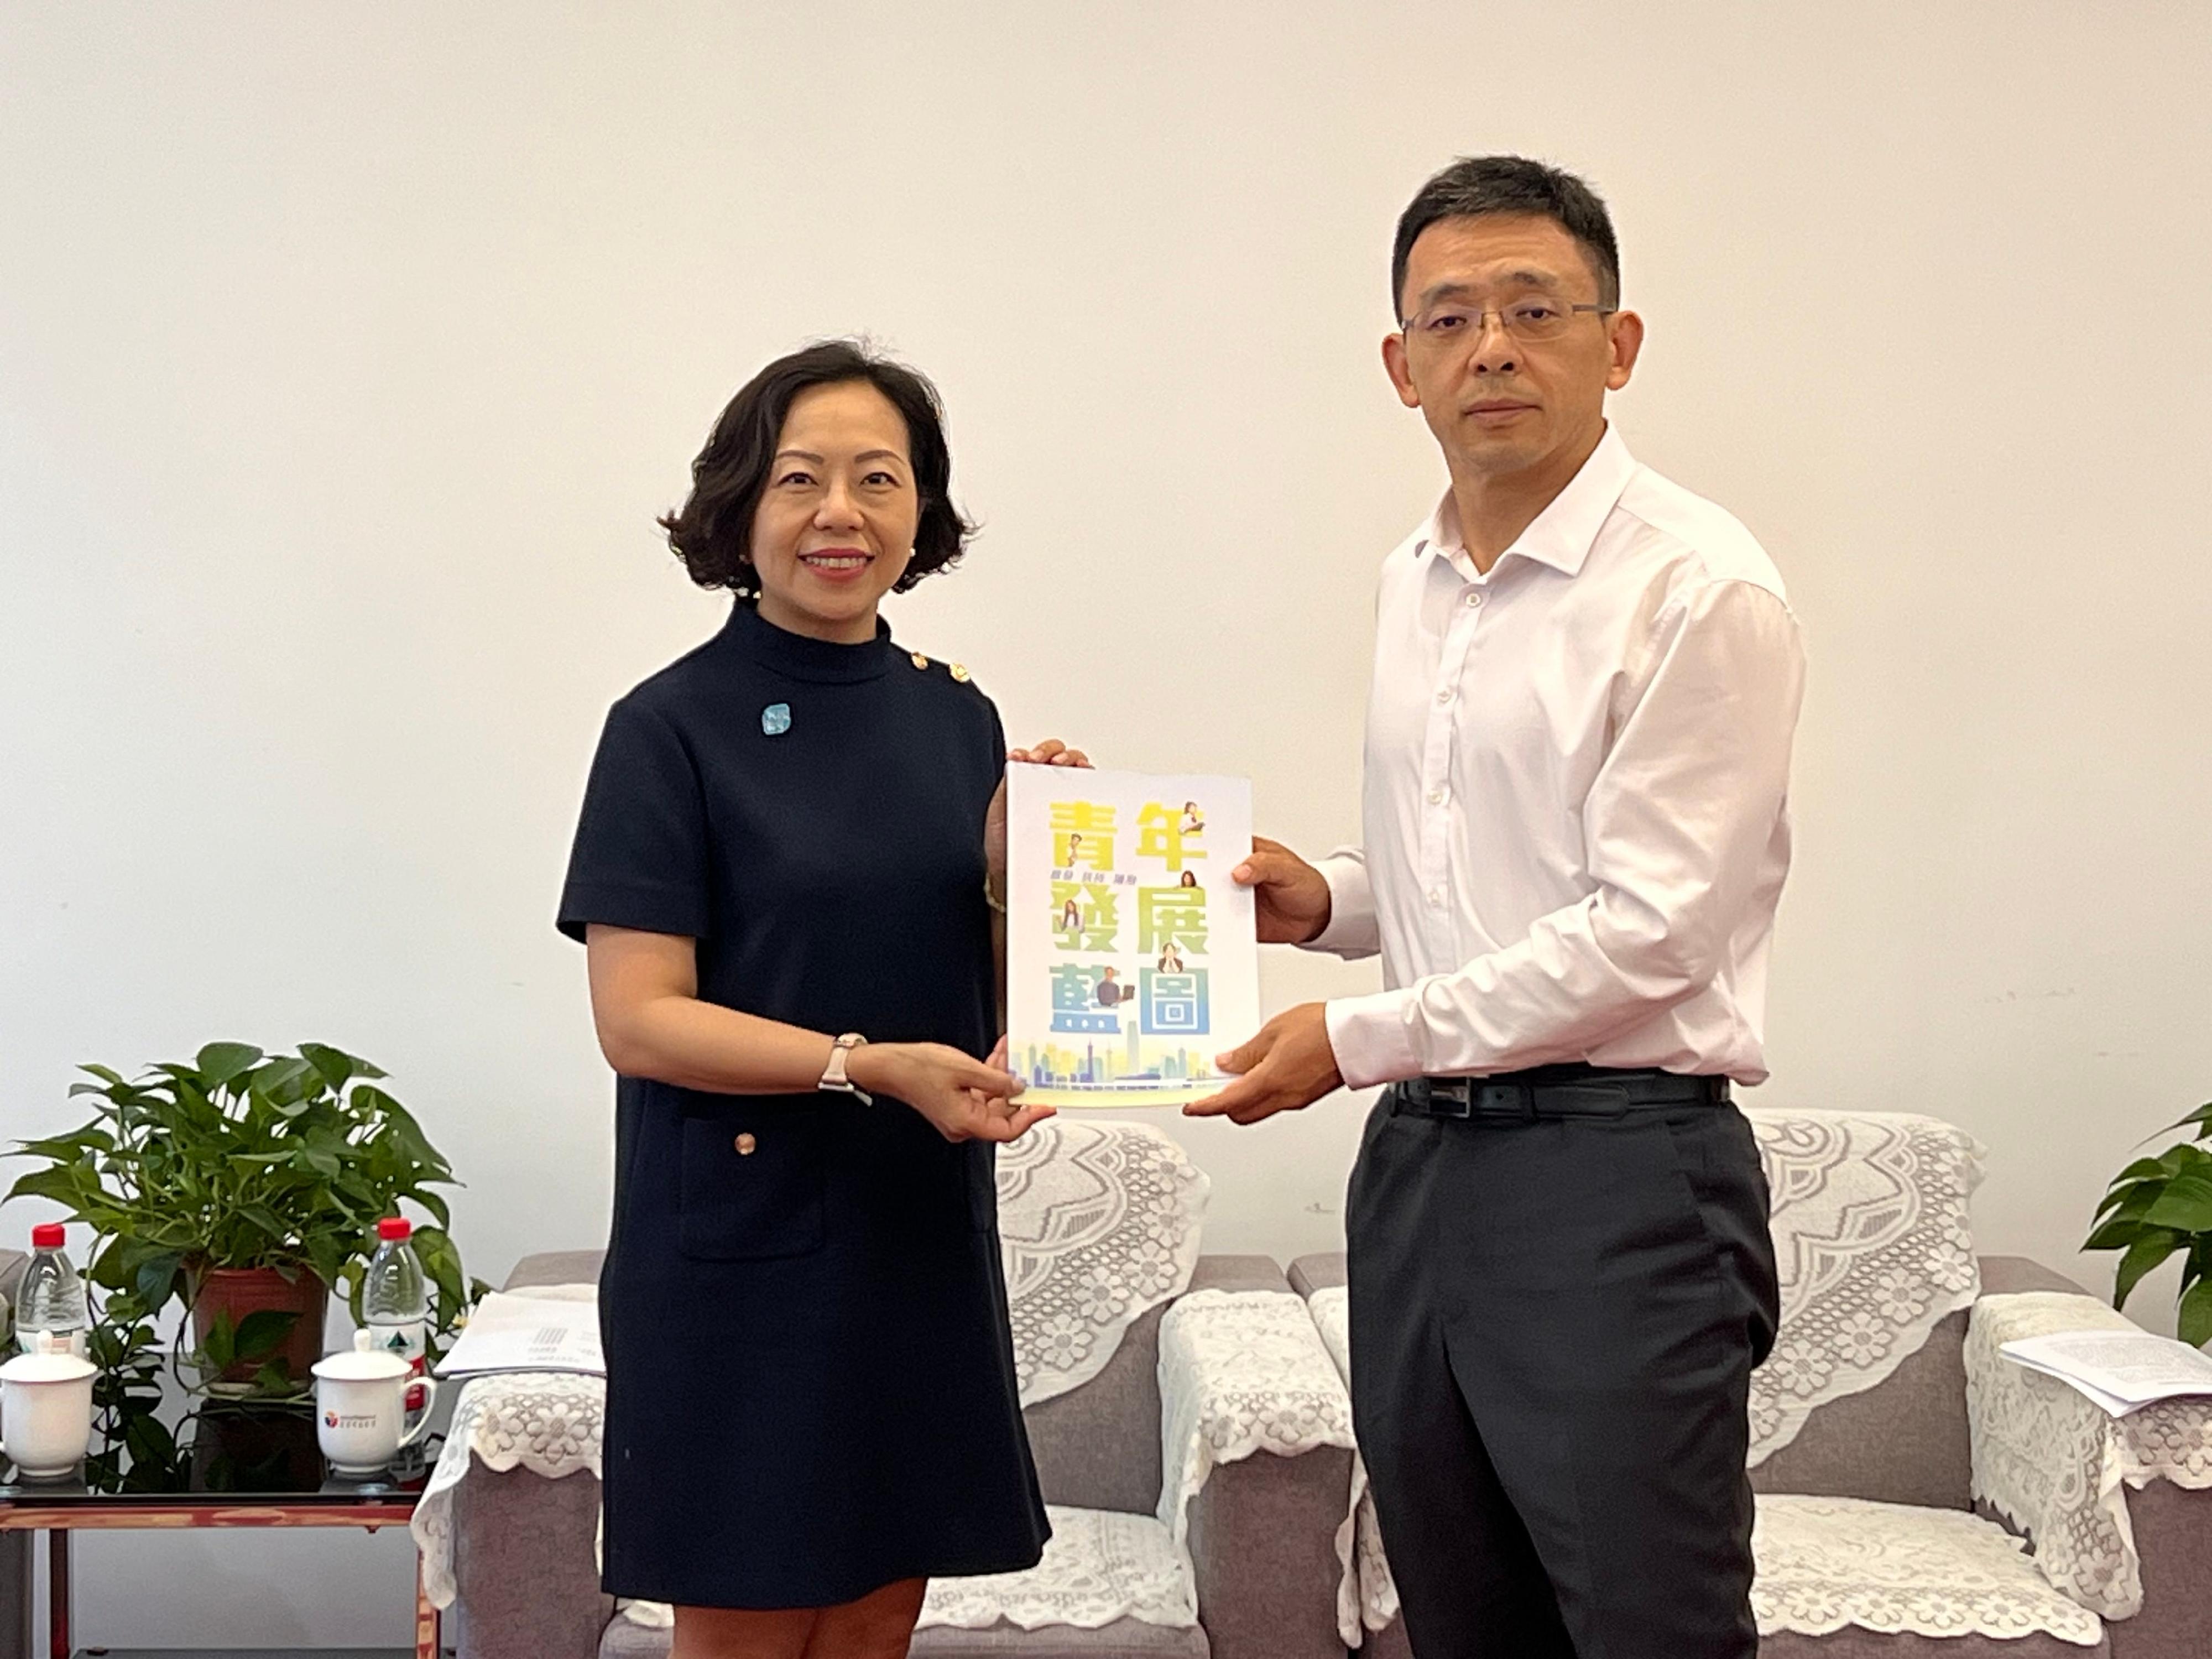 民政及青年事务局局长麦美娟今日（七月十八日）继续在北京的访问行程。图示麦美娟（左）与北京市青年联合会名誉主席郑晓博会面。

